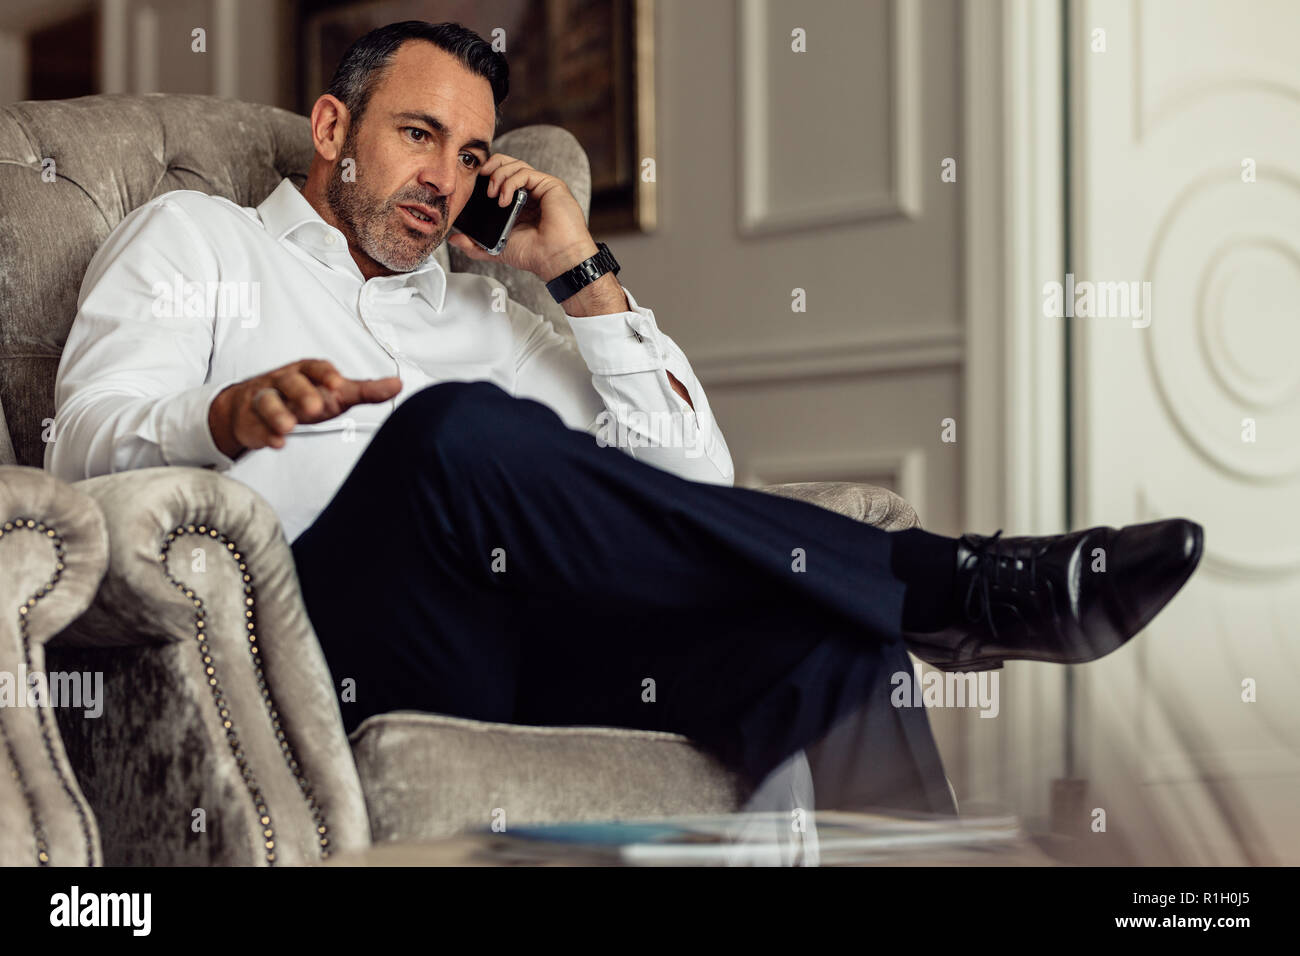 Viaggiatore maturo uomo d'affari che indossa una camicia bianca che effettua una chiamata dopo l'arrivo in camera. viaggiatore seduto sul divano e a parlare sullo smartphone. Foto Stock